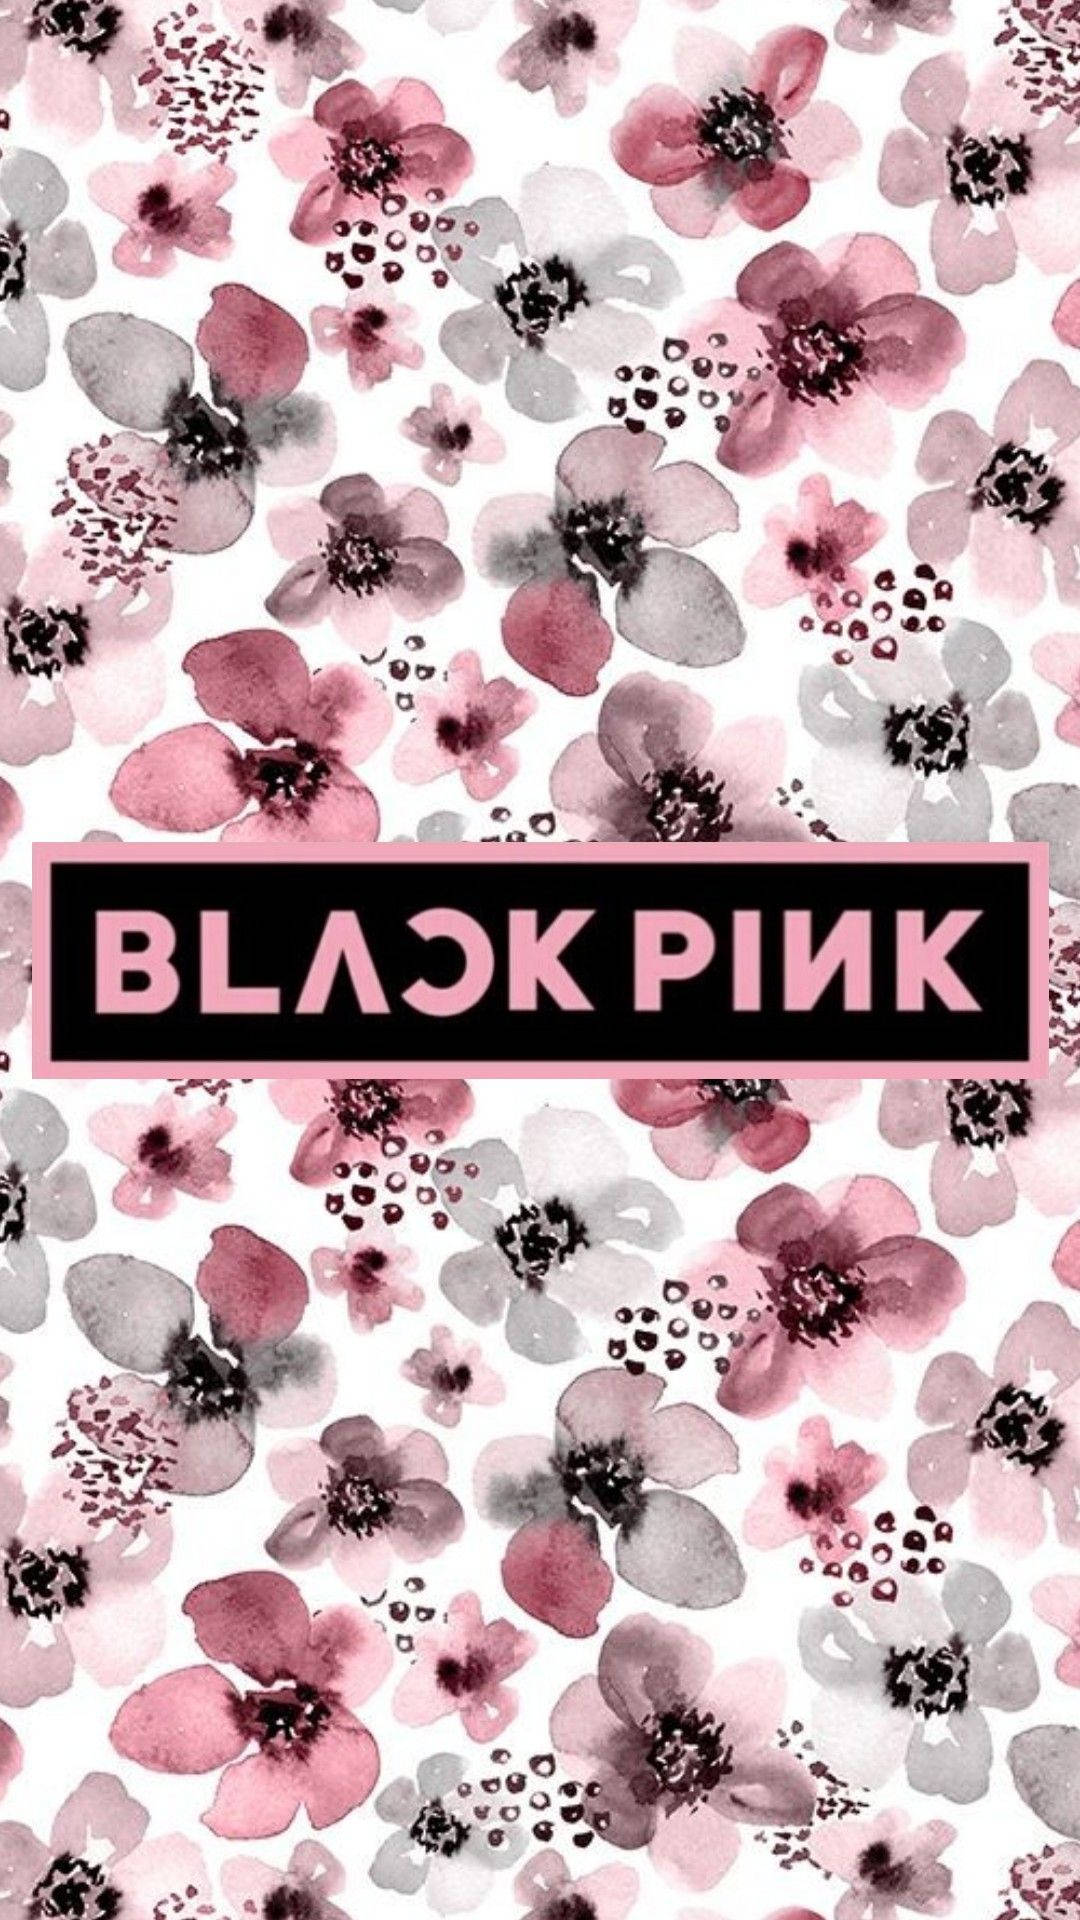 Blackpink Logo Over Black And Pink Flowers